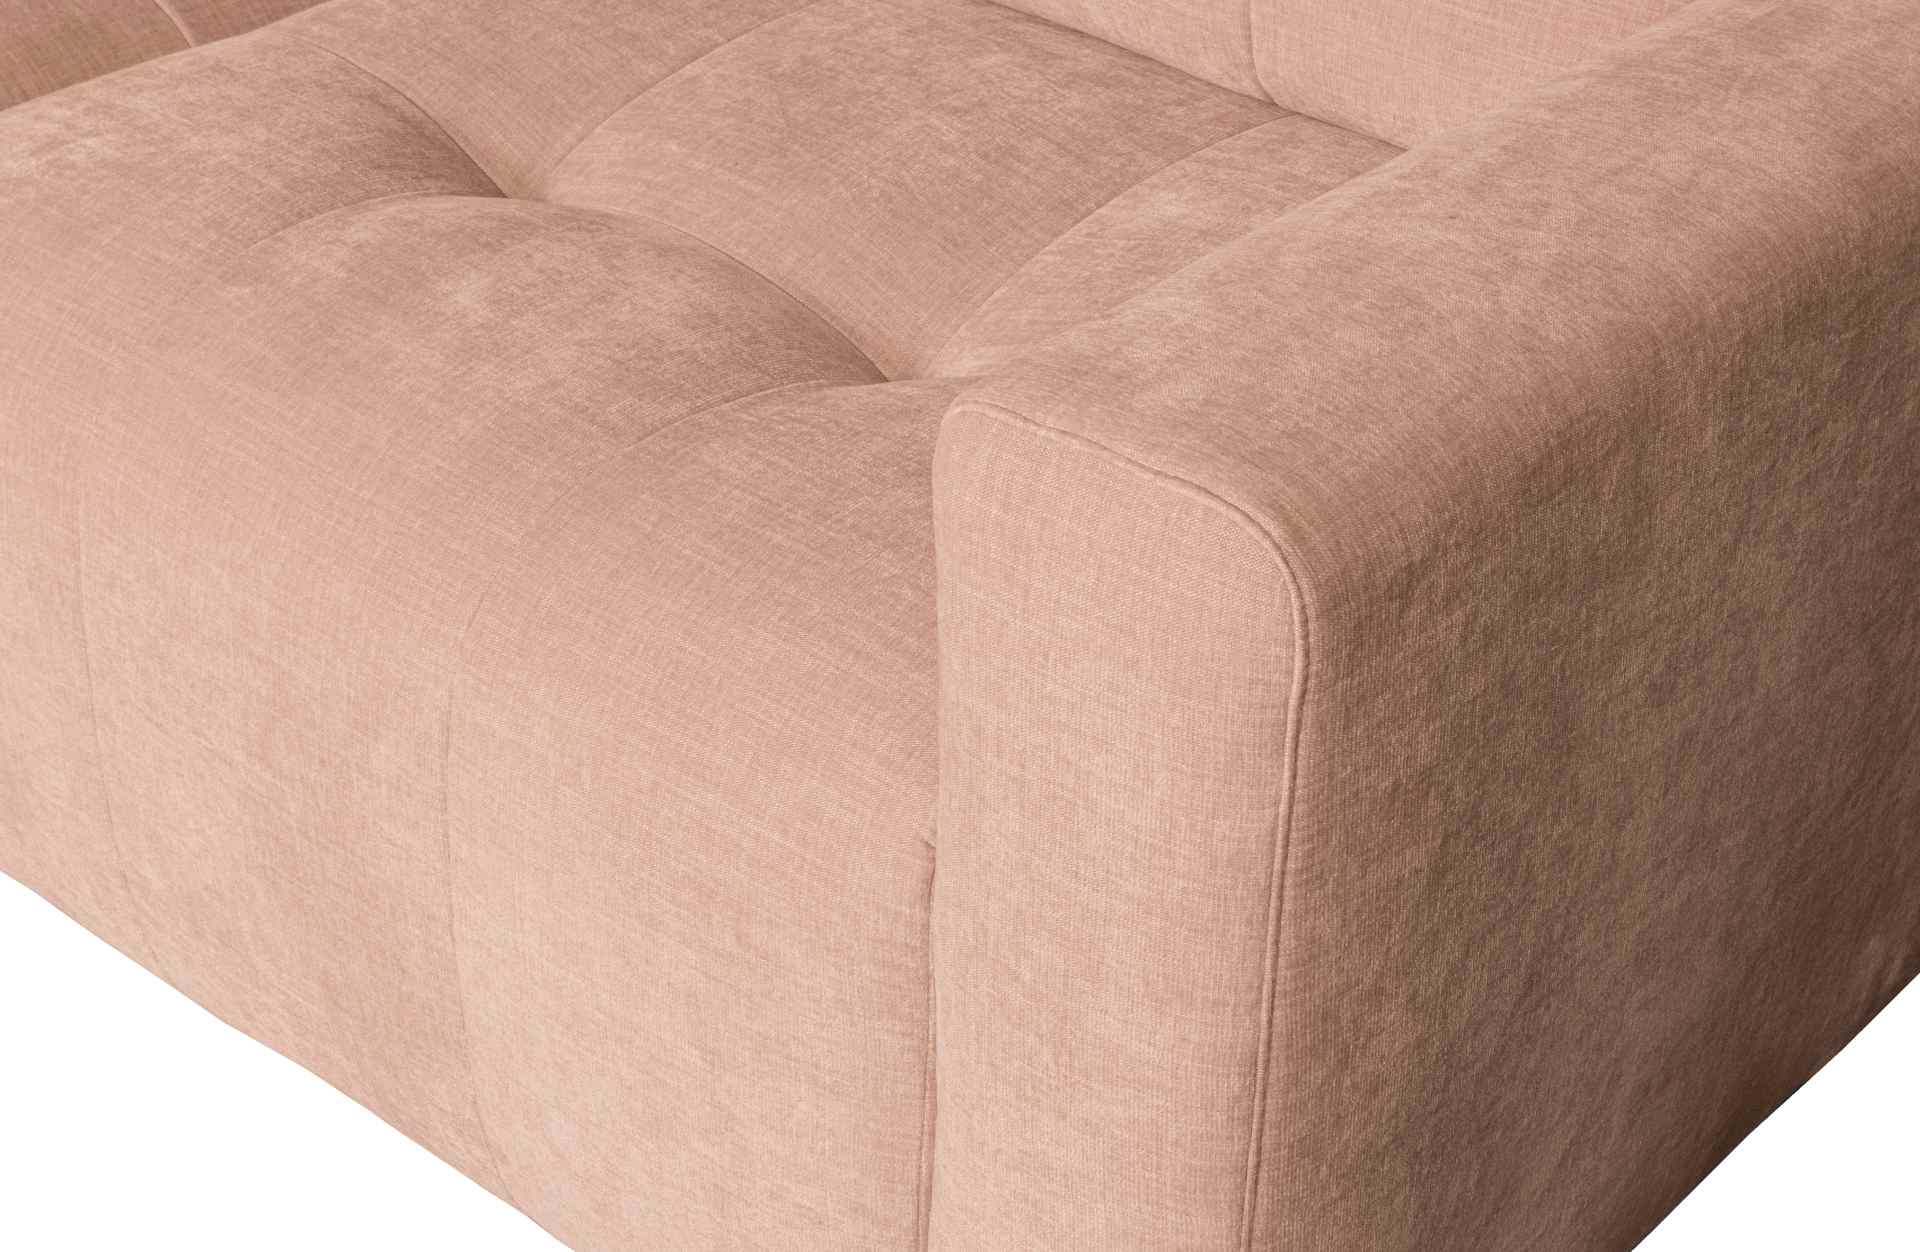 Die Chaise Lounge Bar überzeugt mit ihrem modernen Design. Gefertigt wurde sie aus gewebten Stoff, welcher einen rosa Farbton besitzen. Das Gestell ist aus Kunststoff und hat eine schwarze Farbe. Die Lounge hat eine Breite von 280 cm.